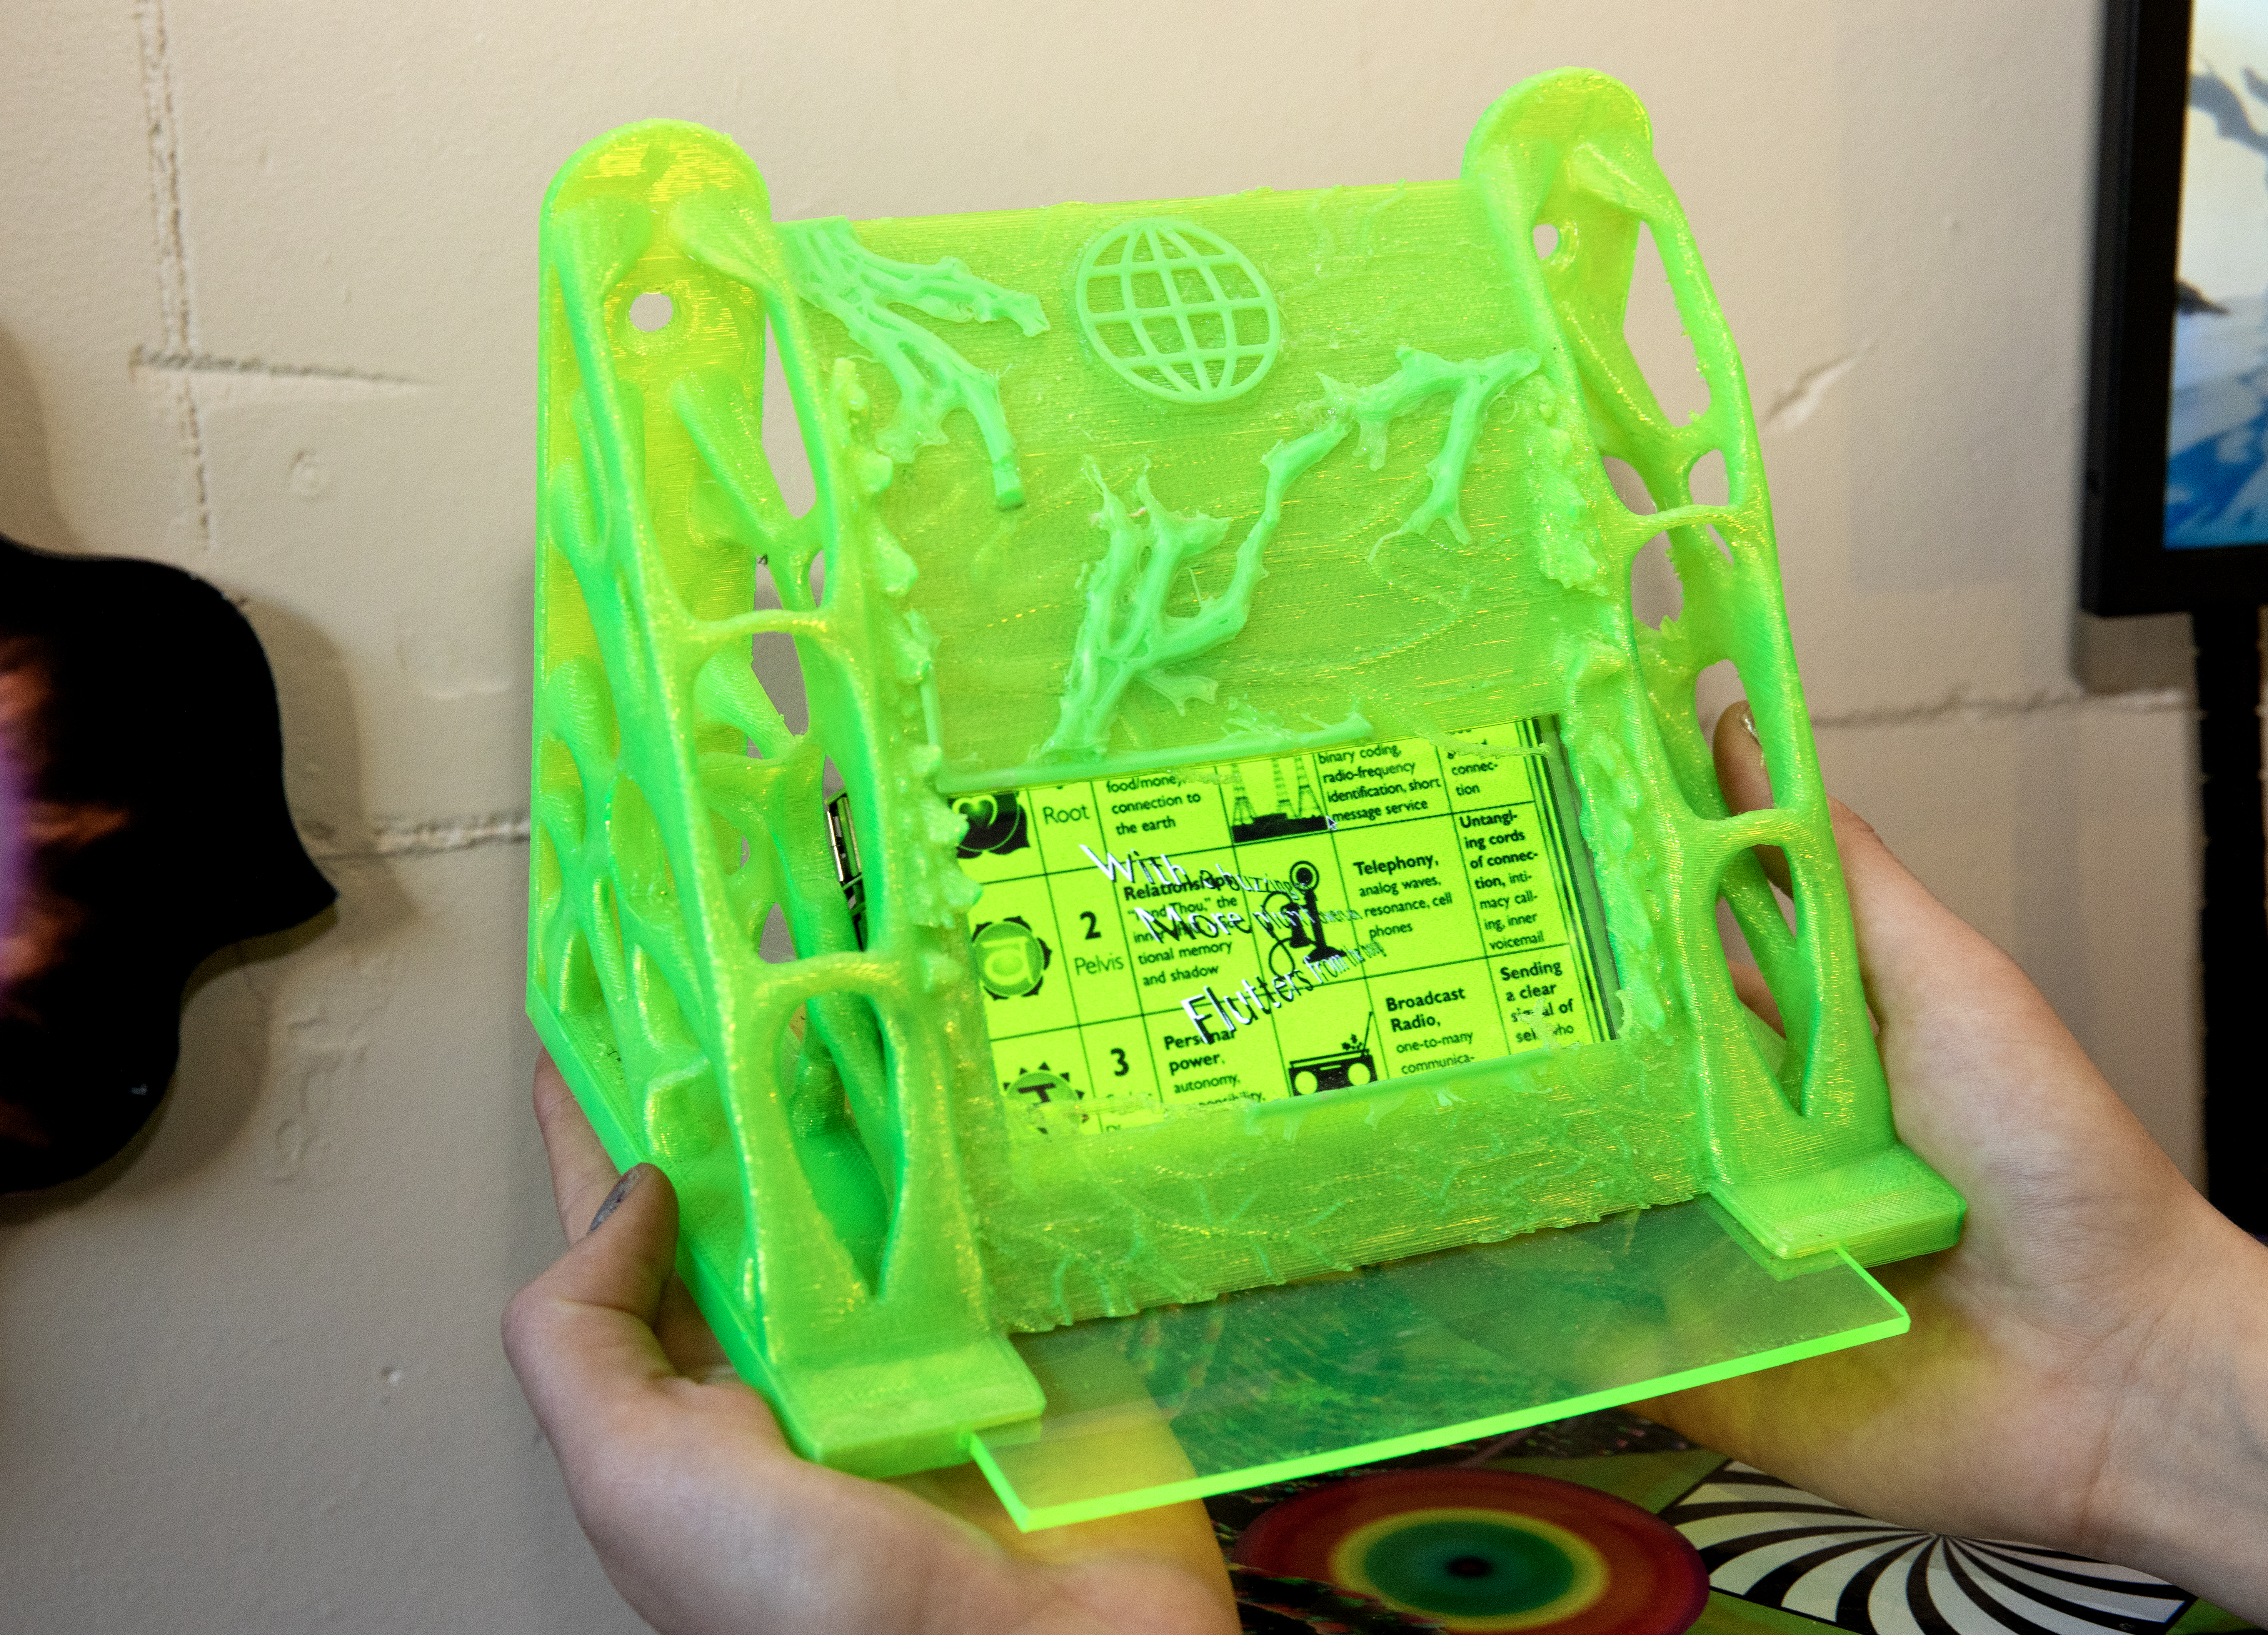 Een foto van een Haiku generator; een klein beeldscherm omhuld door een houder van fluoriserend groen plastic